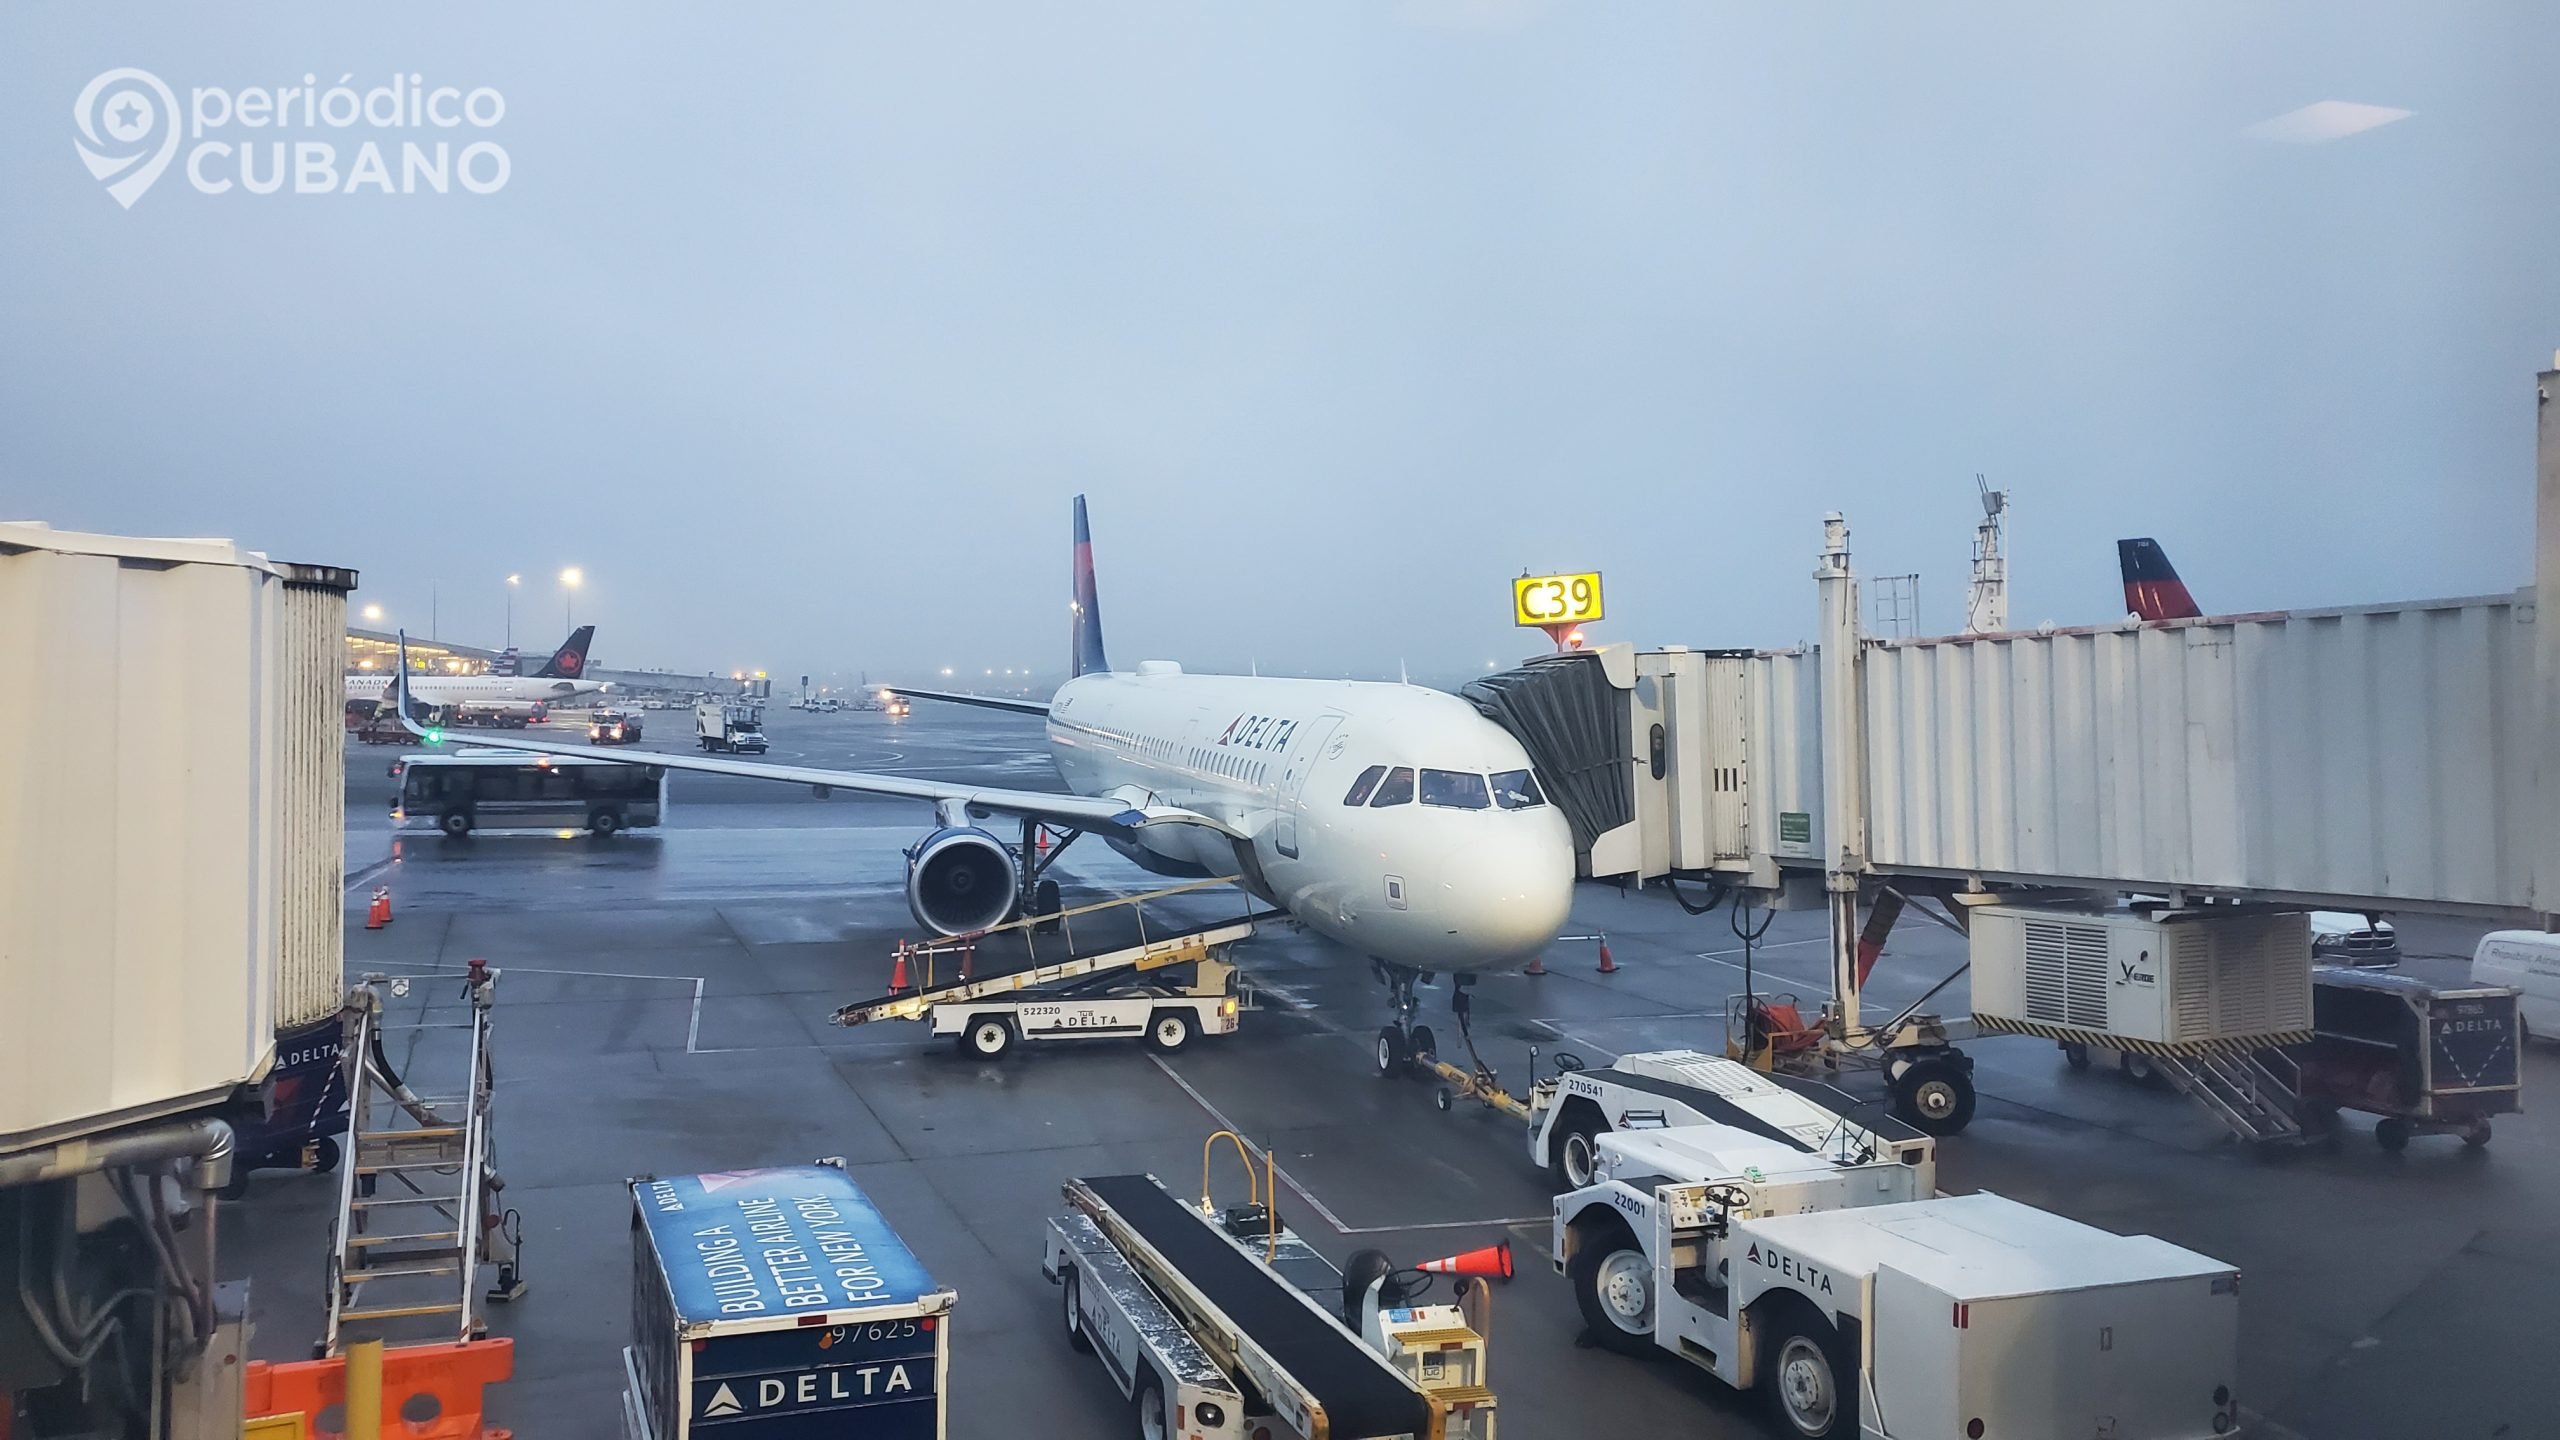 Delta Airlines regresa con vuelos a Cuba desde Miami el próximo mes de abril